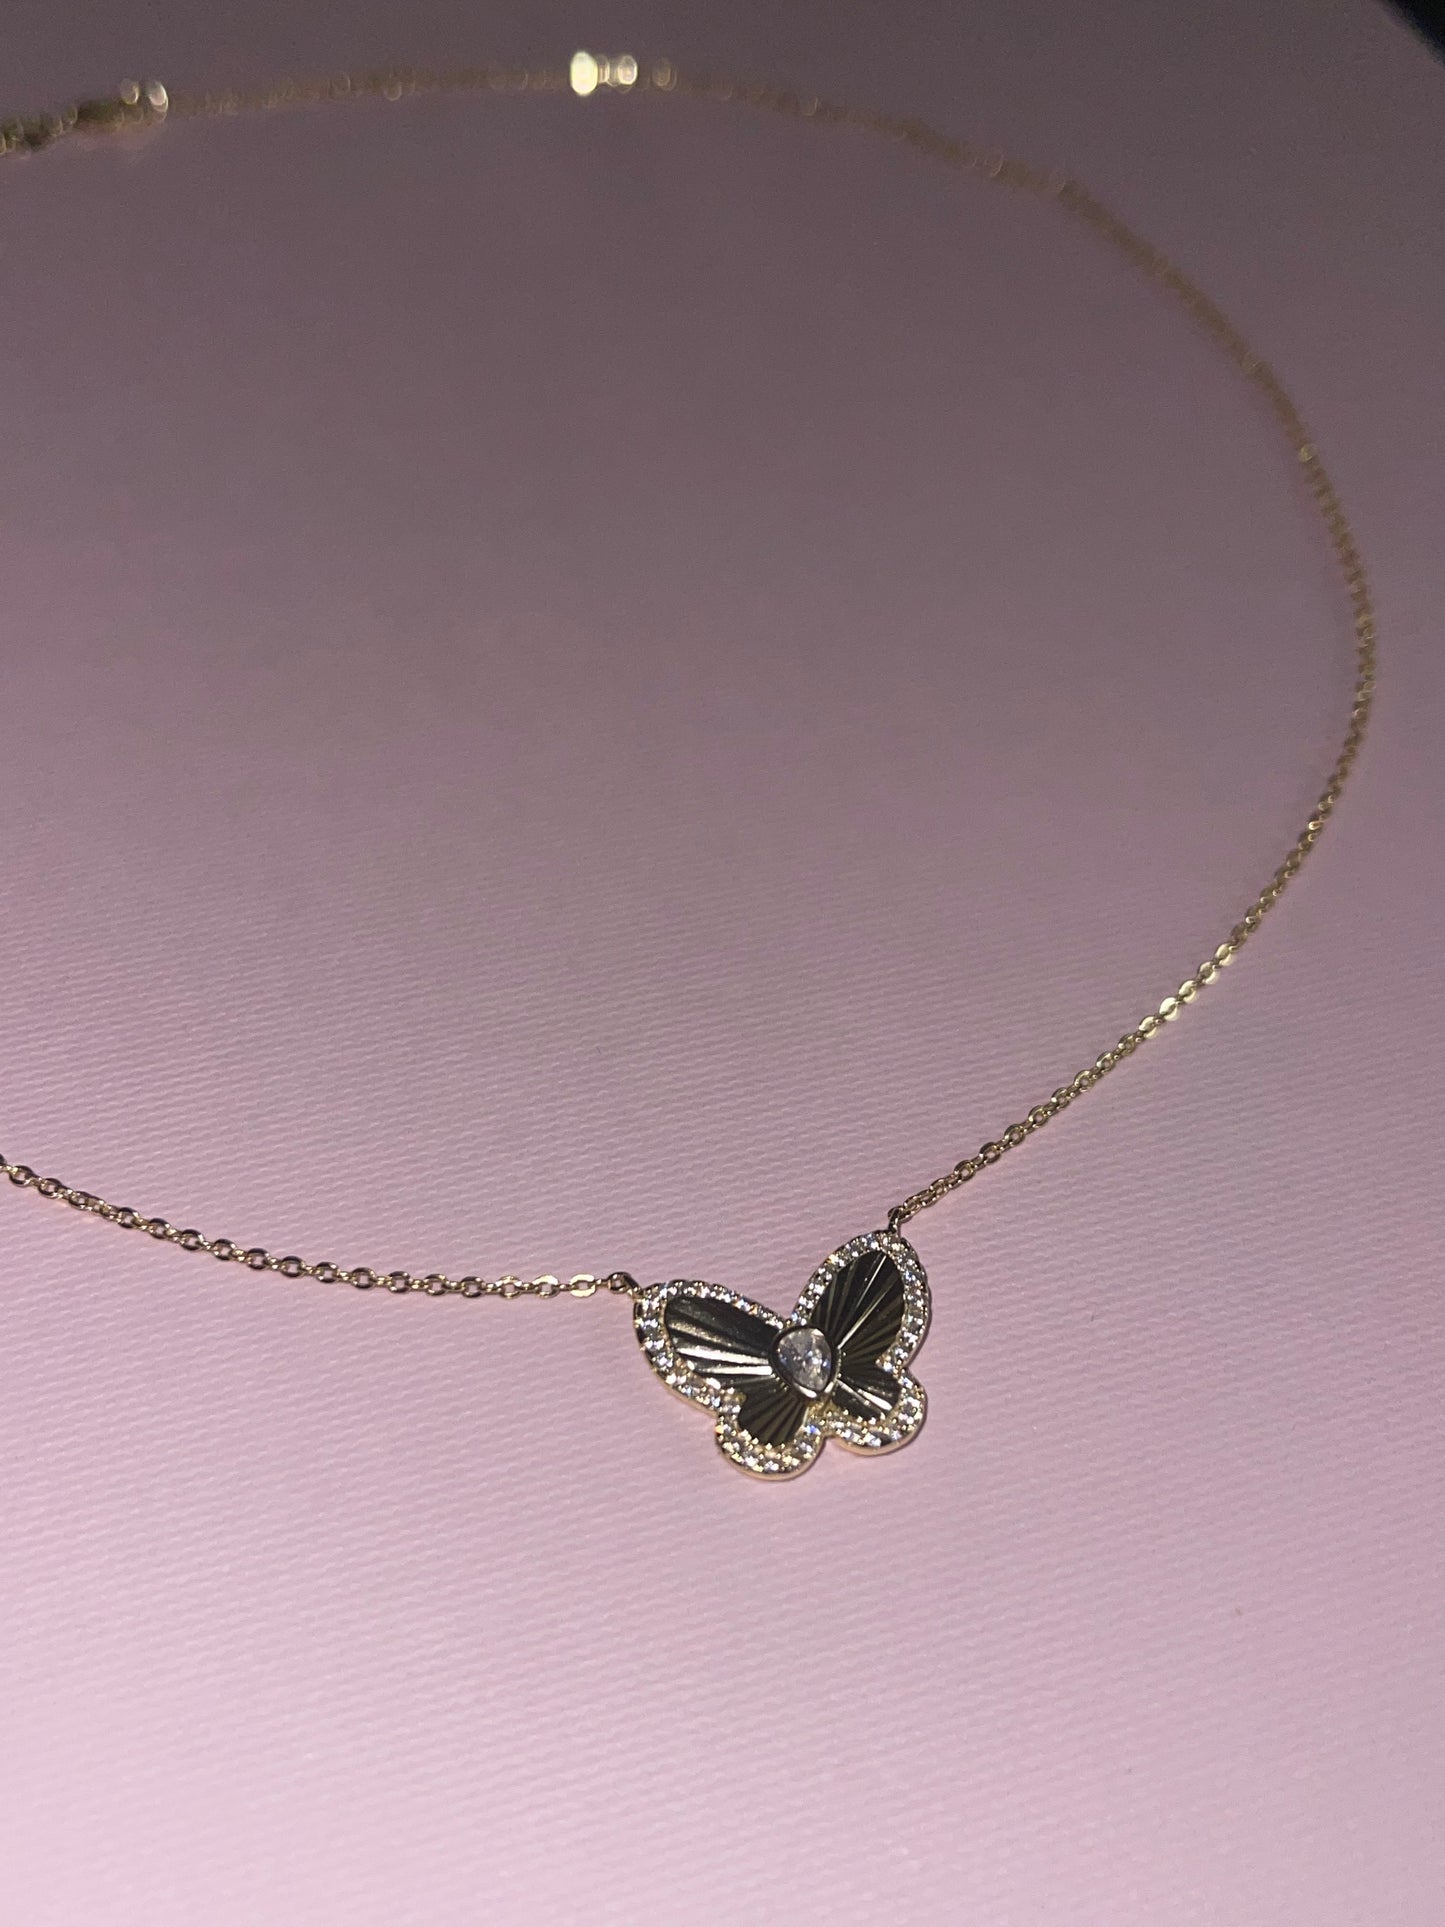 Heartbreaker necklace